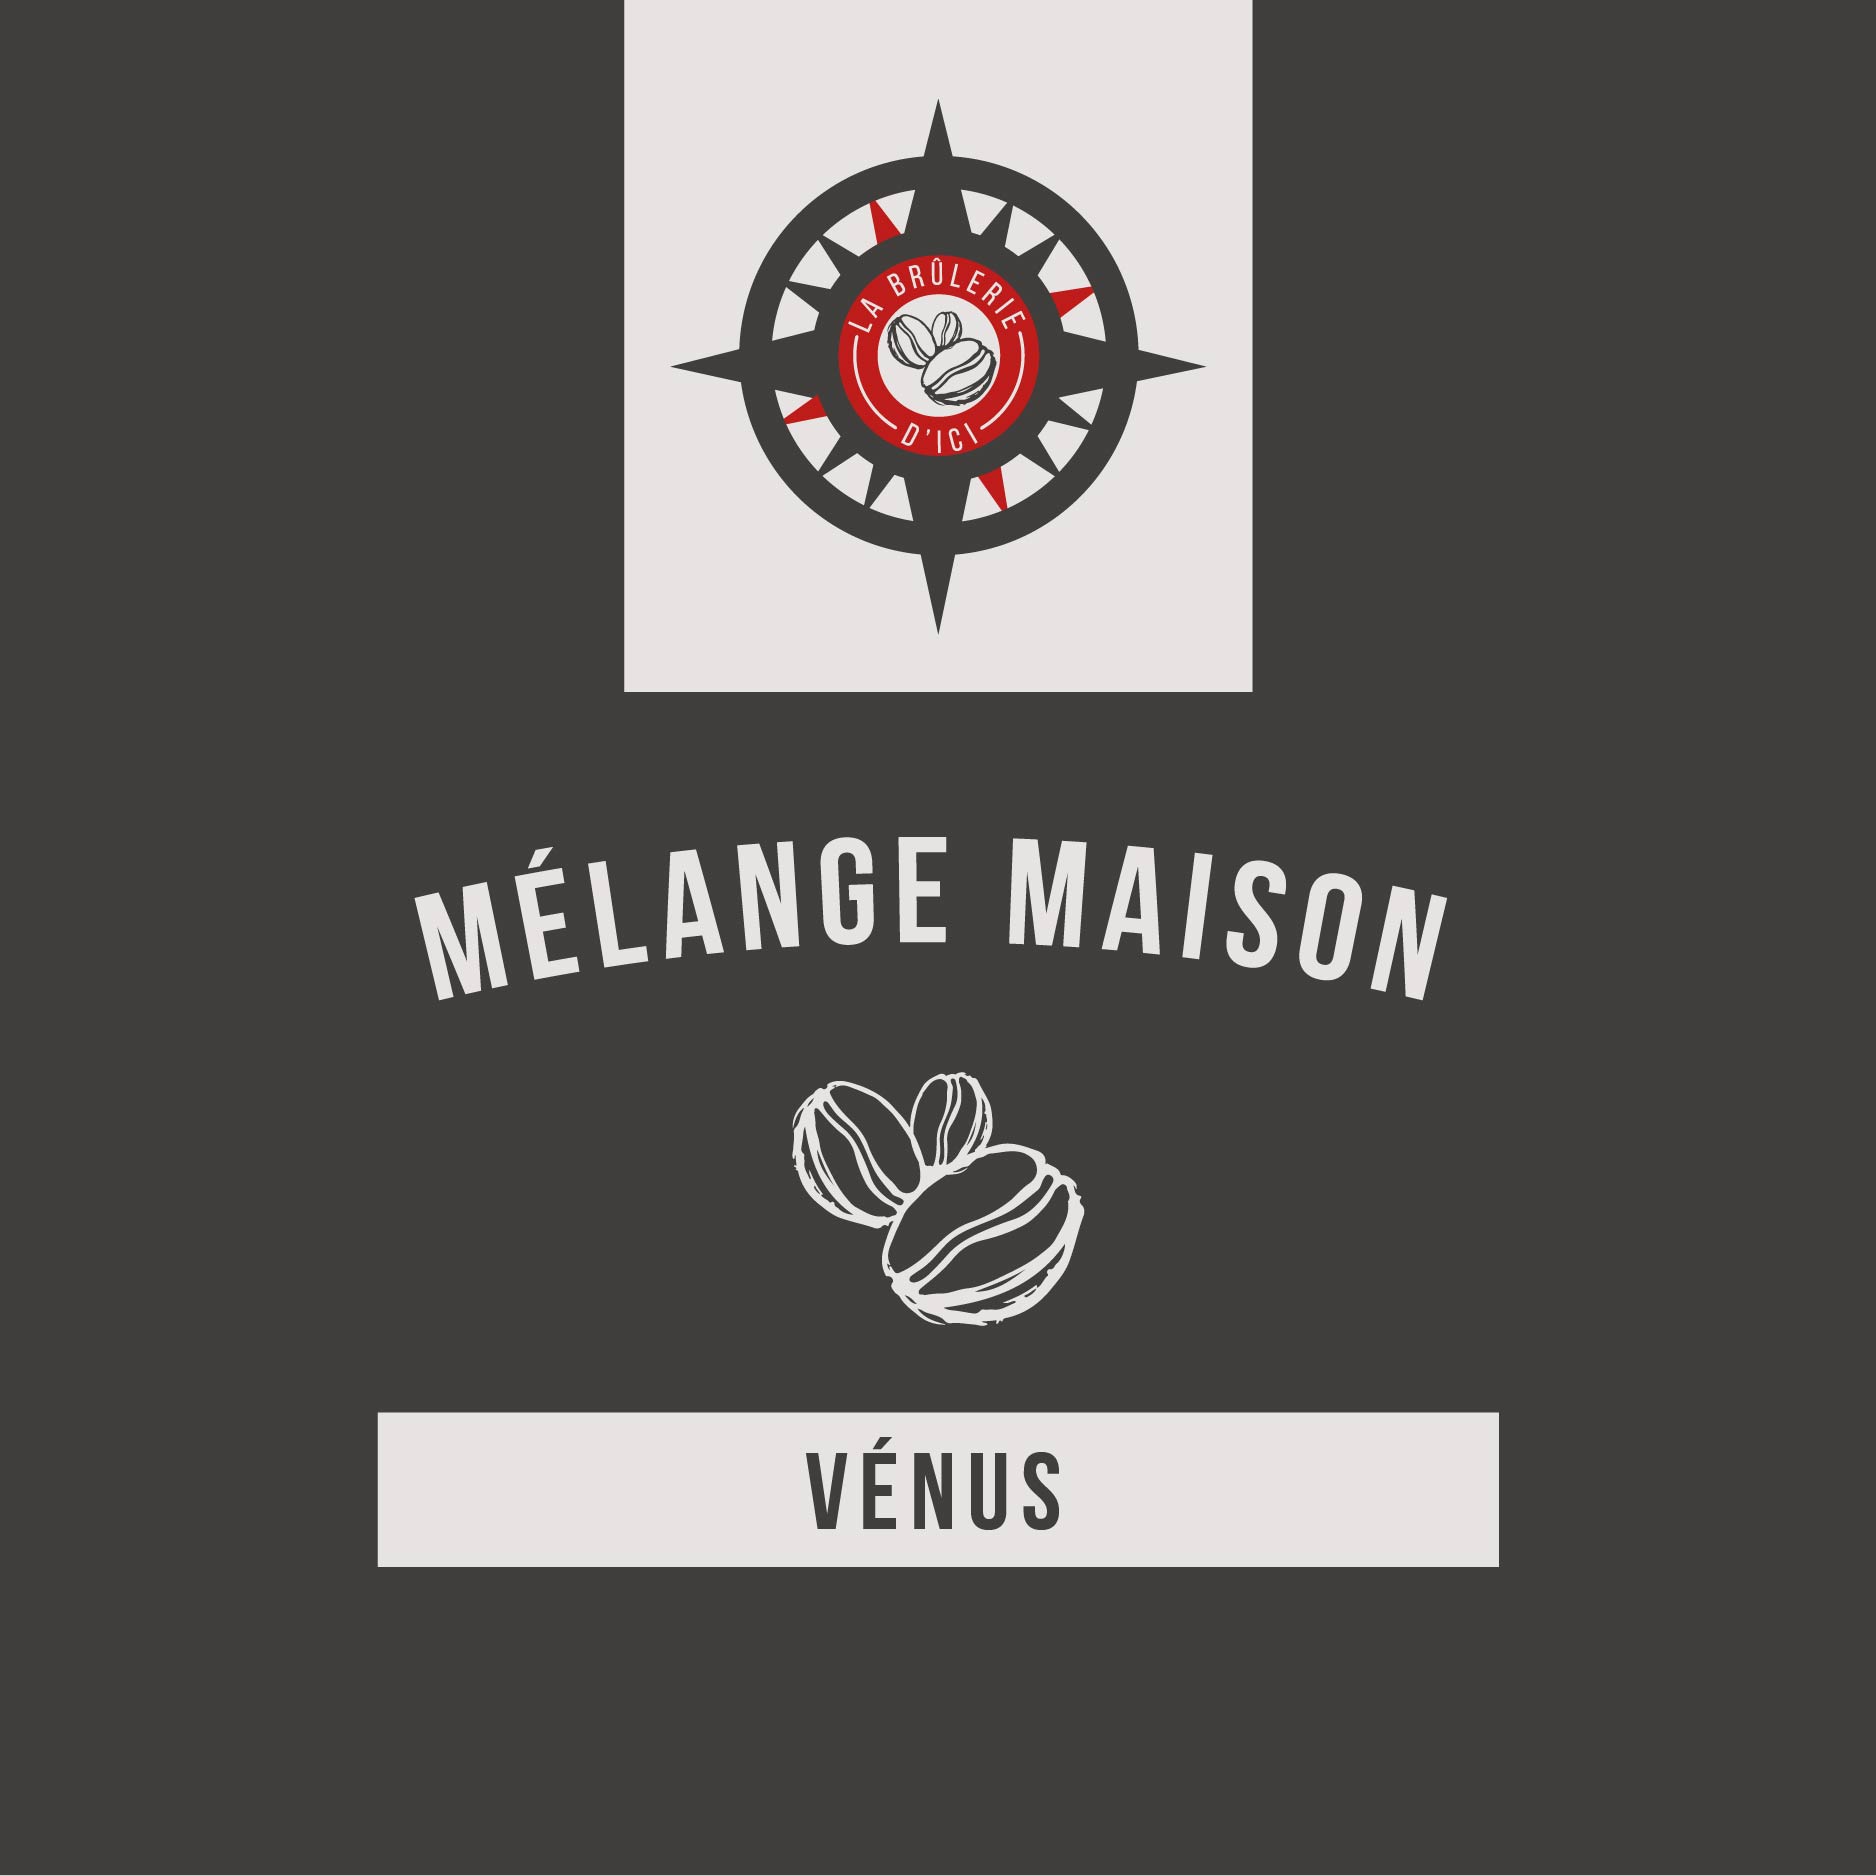 Le Vénus - Mélange maison